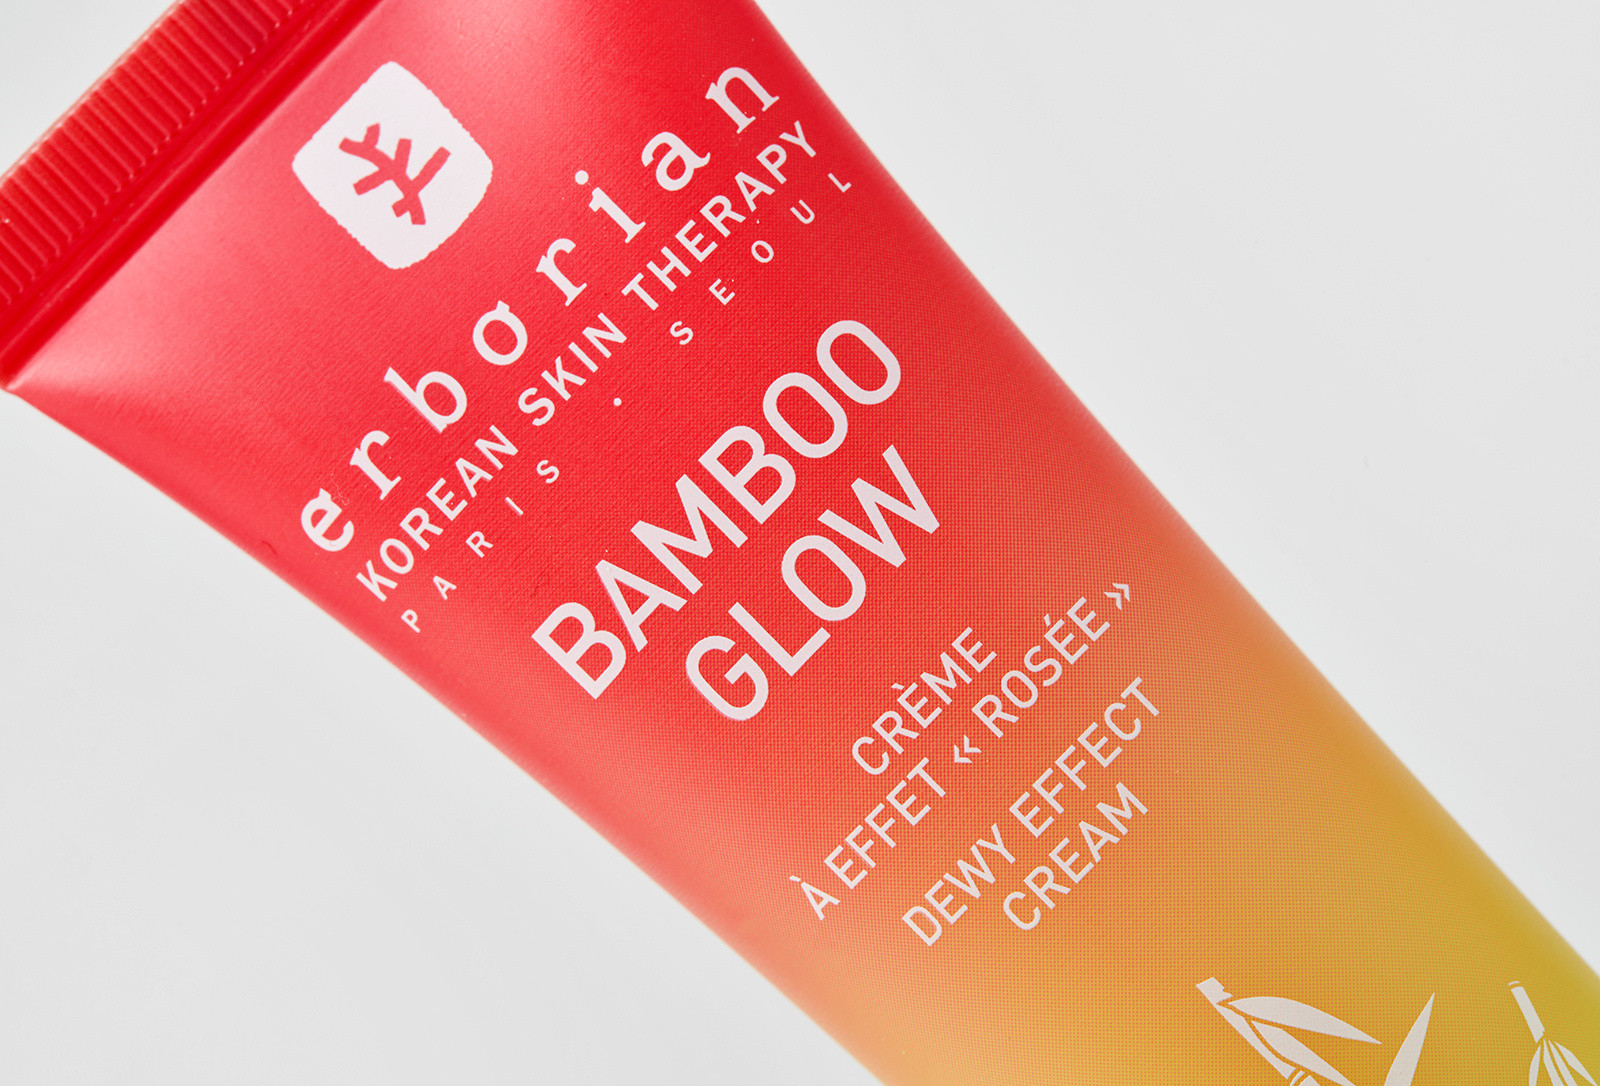 Крем для обличчя Erborian Bamboo Glow